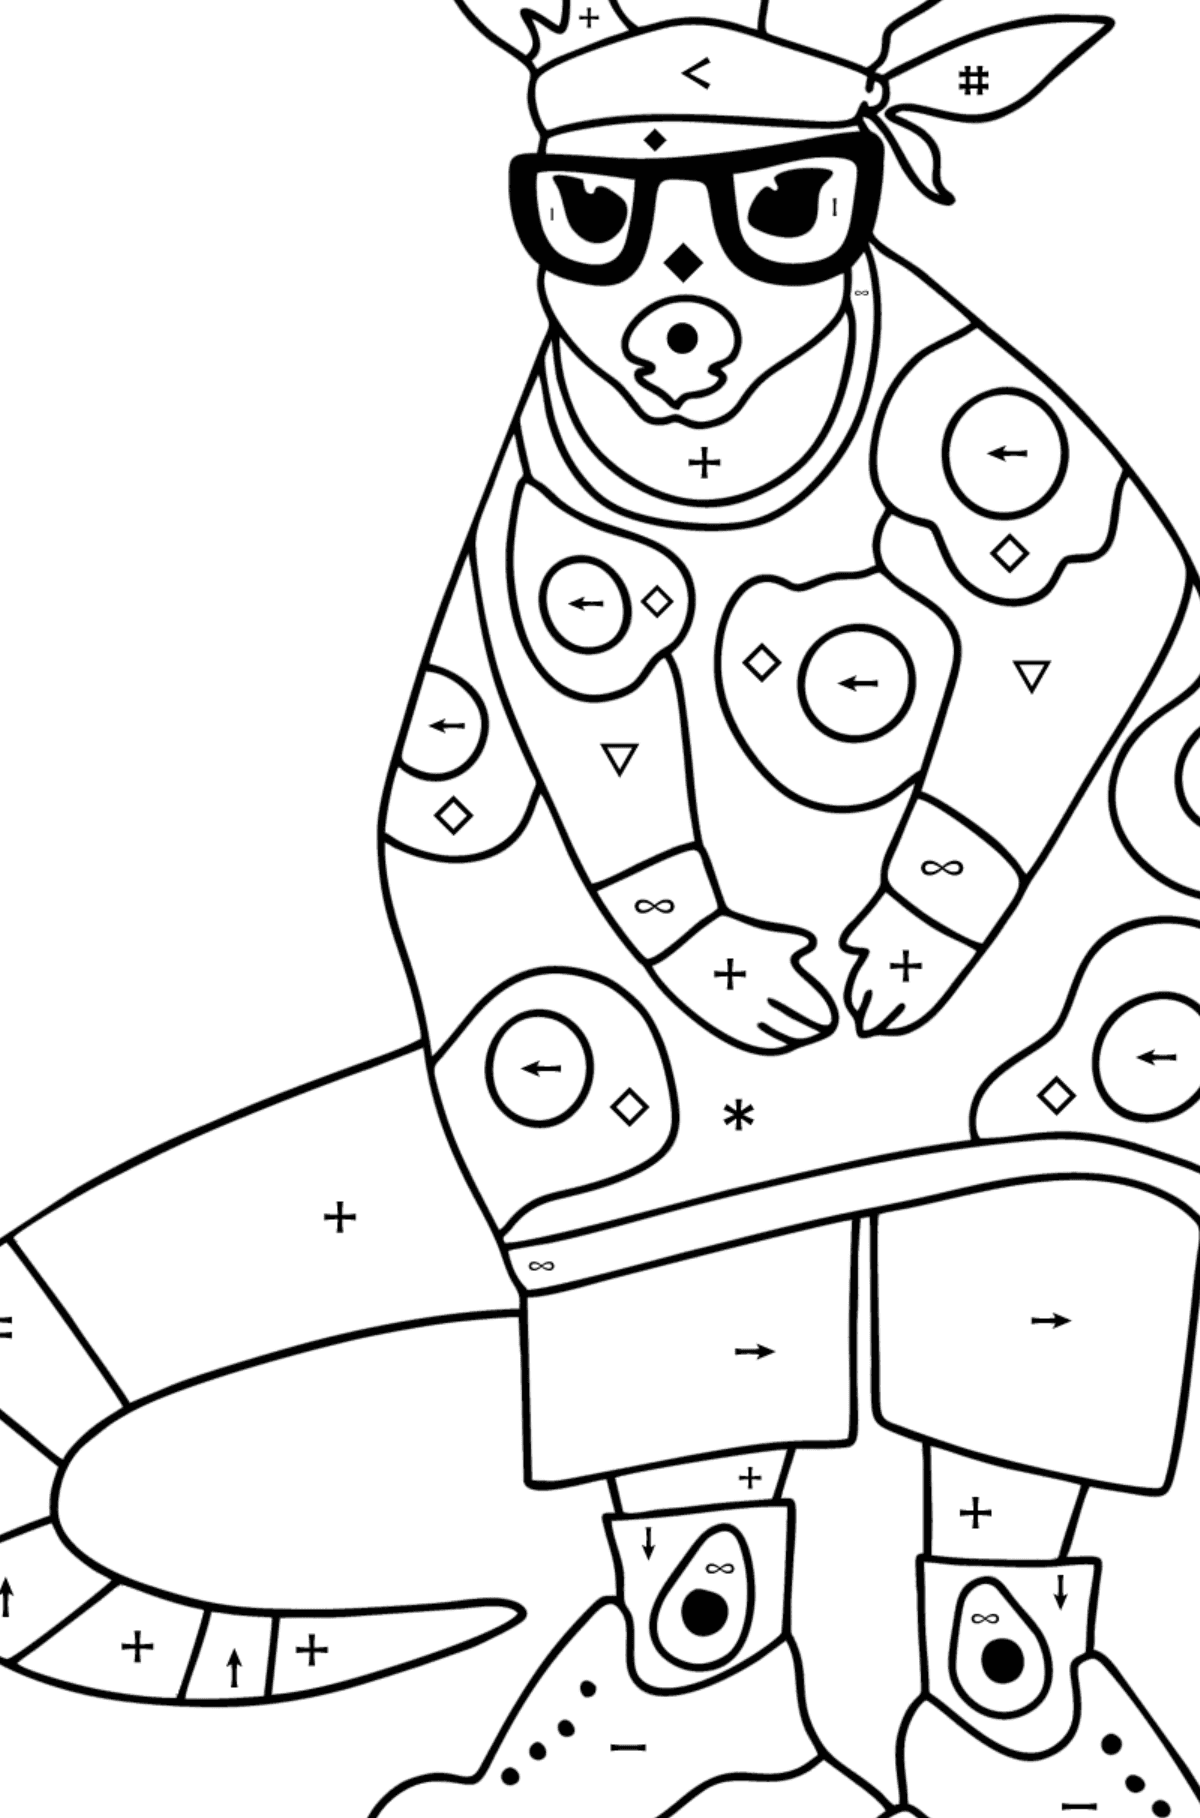 Omalovánka Kreslený milující klokan - Omalovánka podle Symbolů pro děti